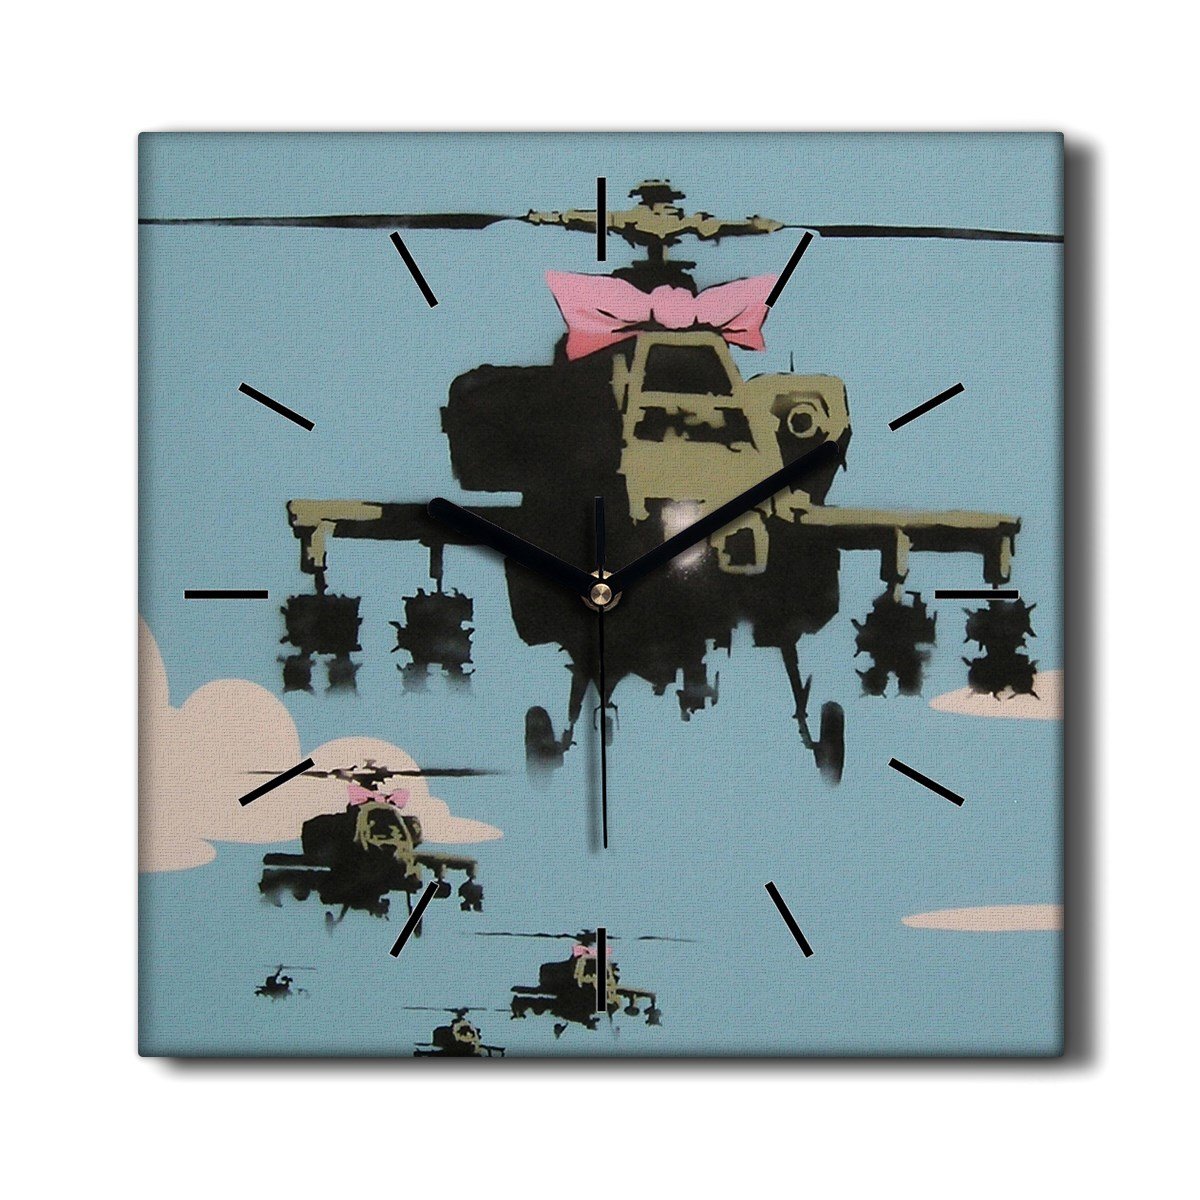 Kuchenny zegar na płótnie Helikopter Banksy 30x30, Coloray